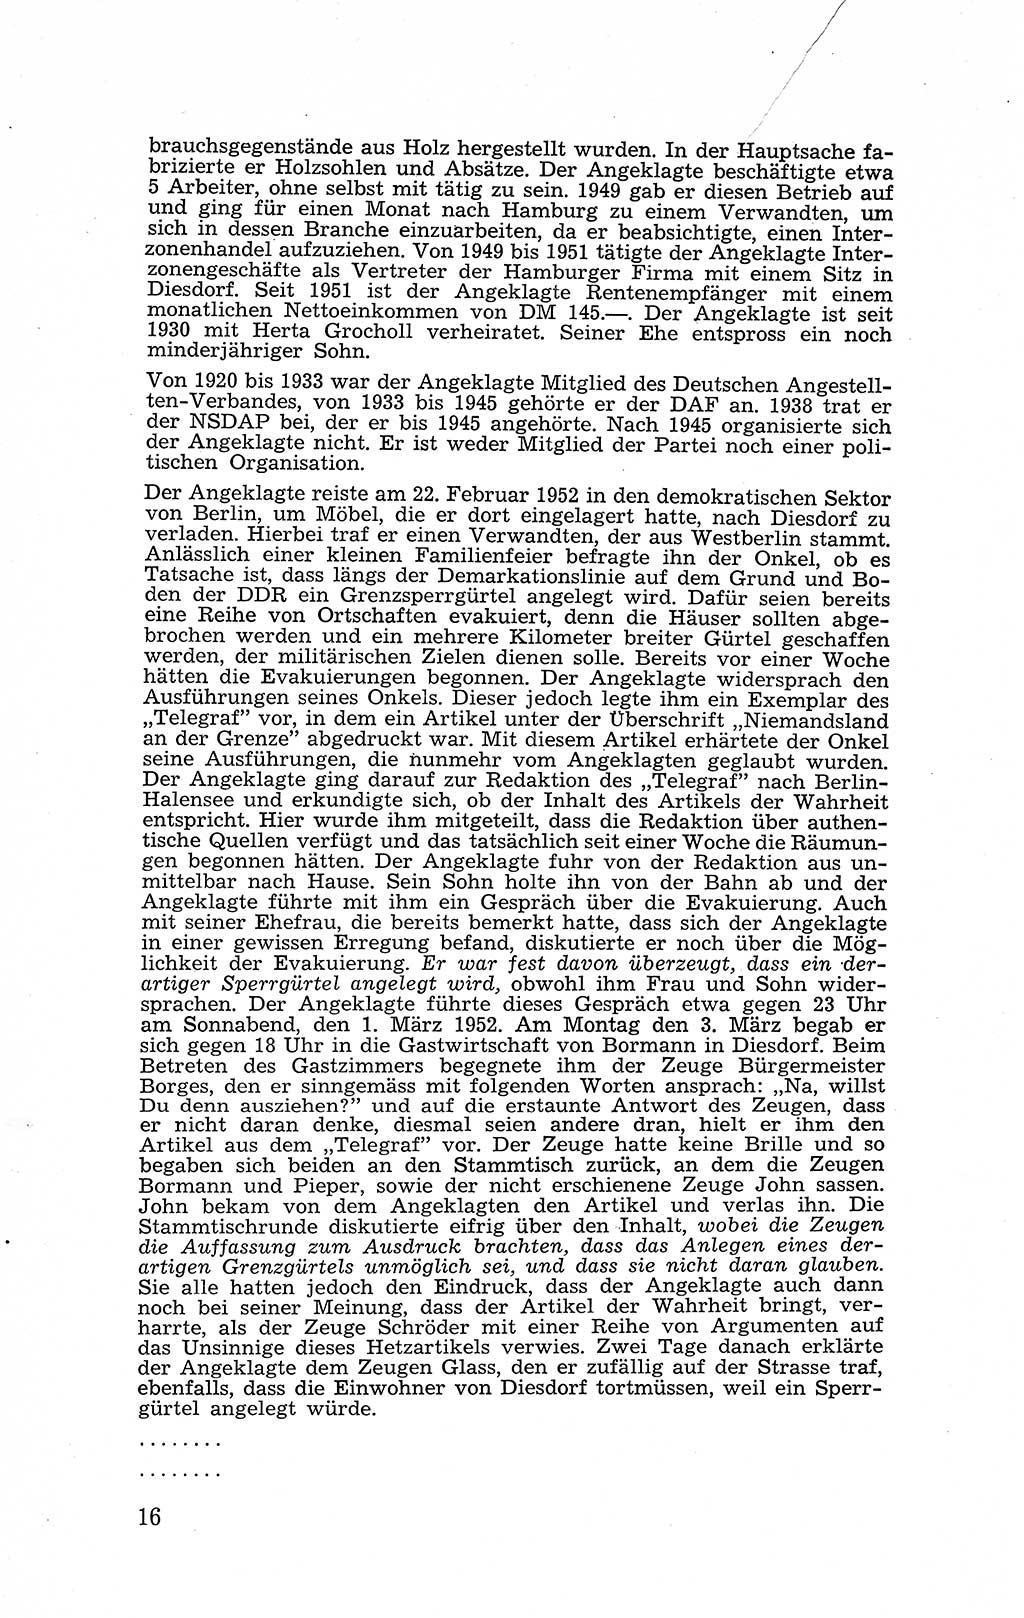 Recht in Fesseln, Dokumente, Internationale Juristen-Kommission [Bundesrepublik Deutschland (BRD)] 1955, Seite 16 (R. Dok. IJK BRD 1955, S. 16)